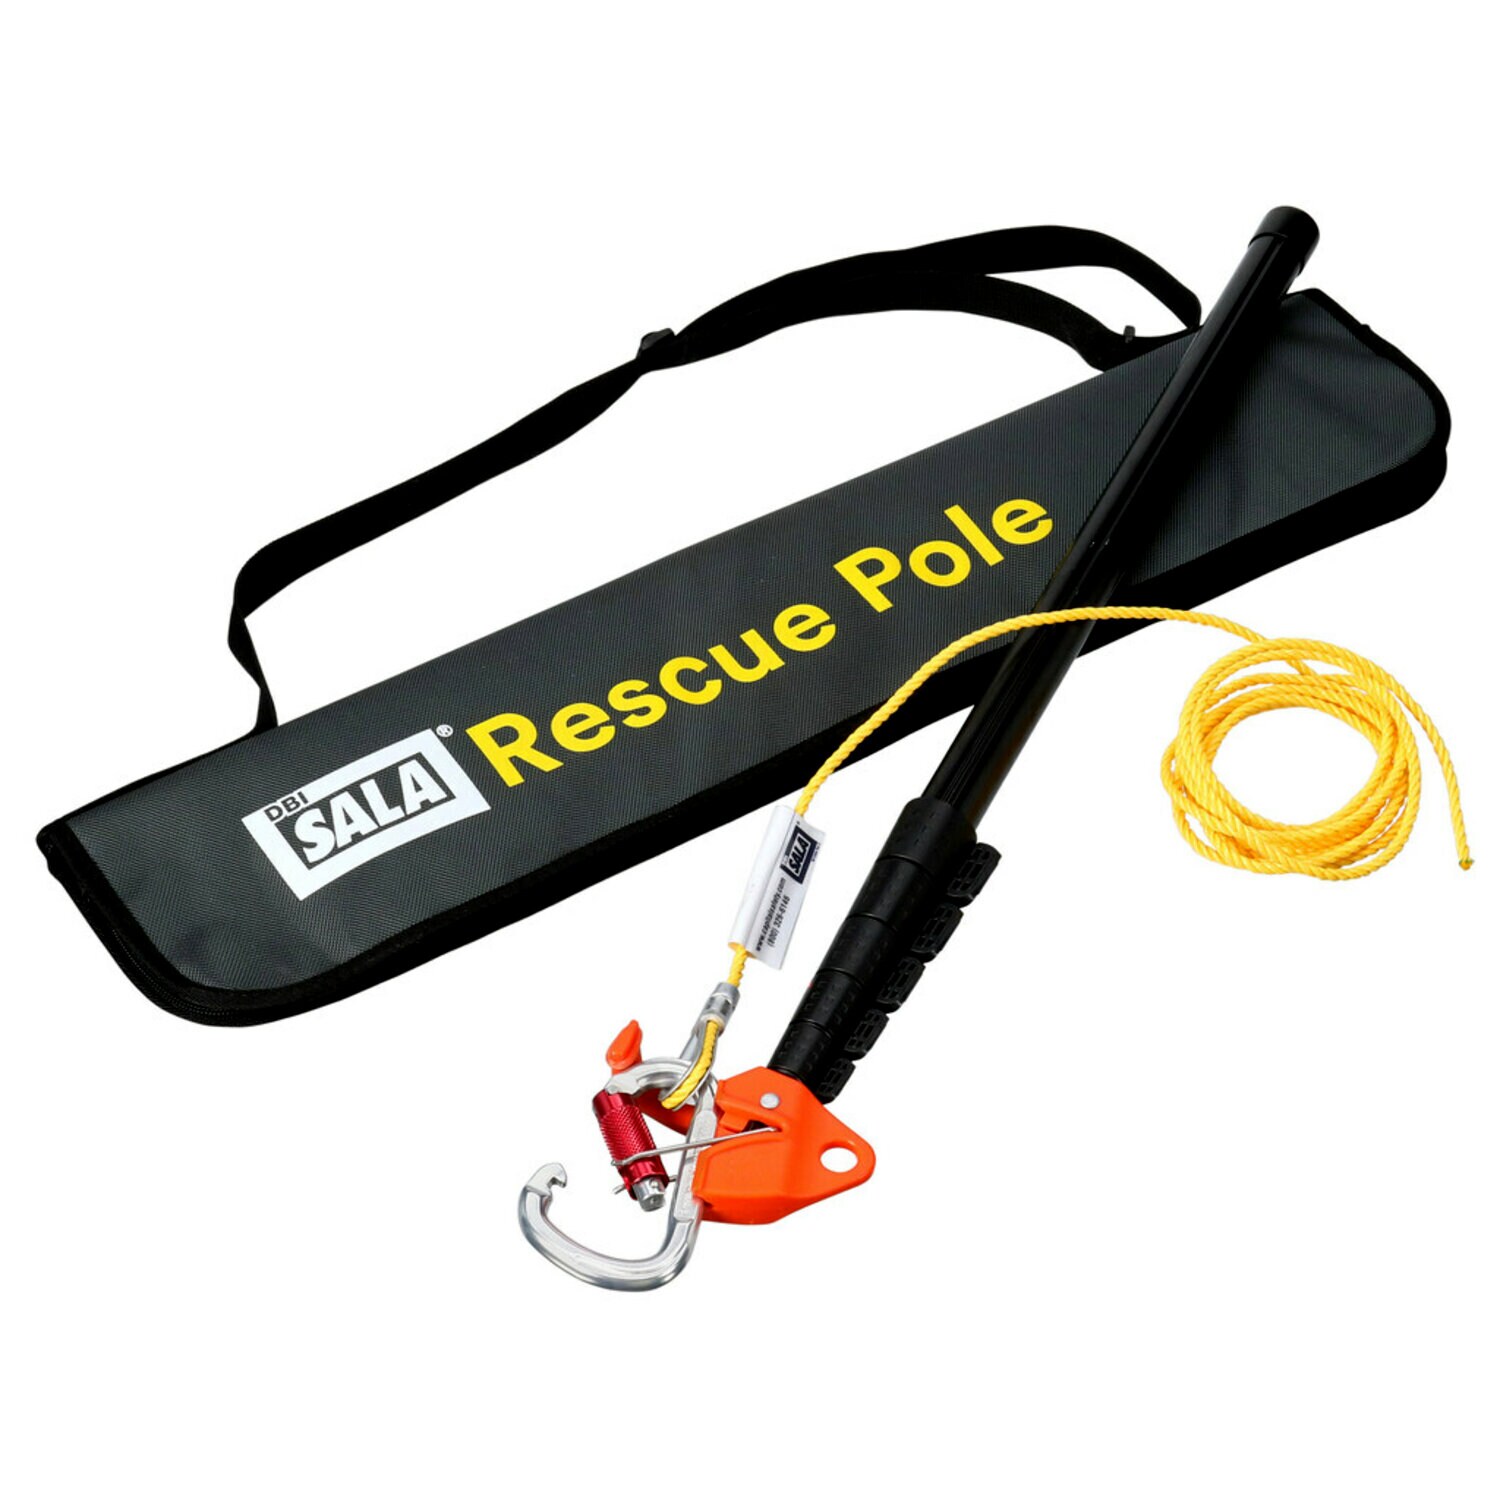 7100214233 - 3M DBI-SALA Rescue Pole 8900299, Black, 1 EA